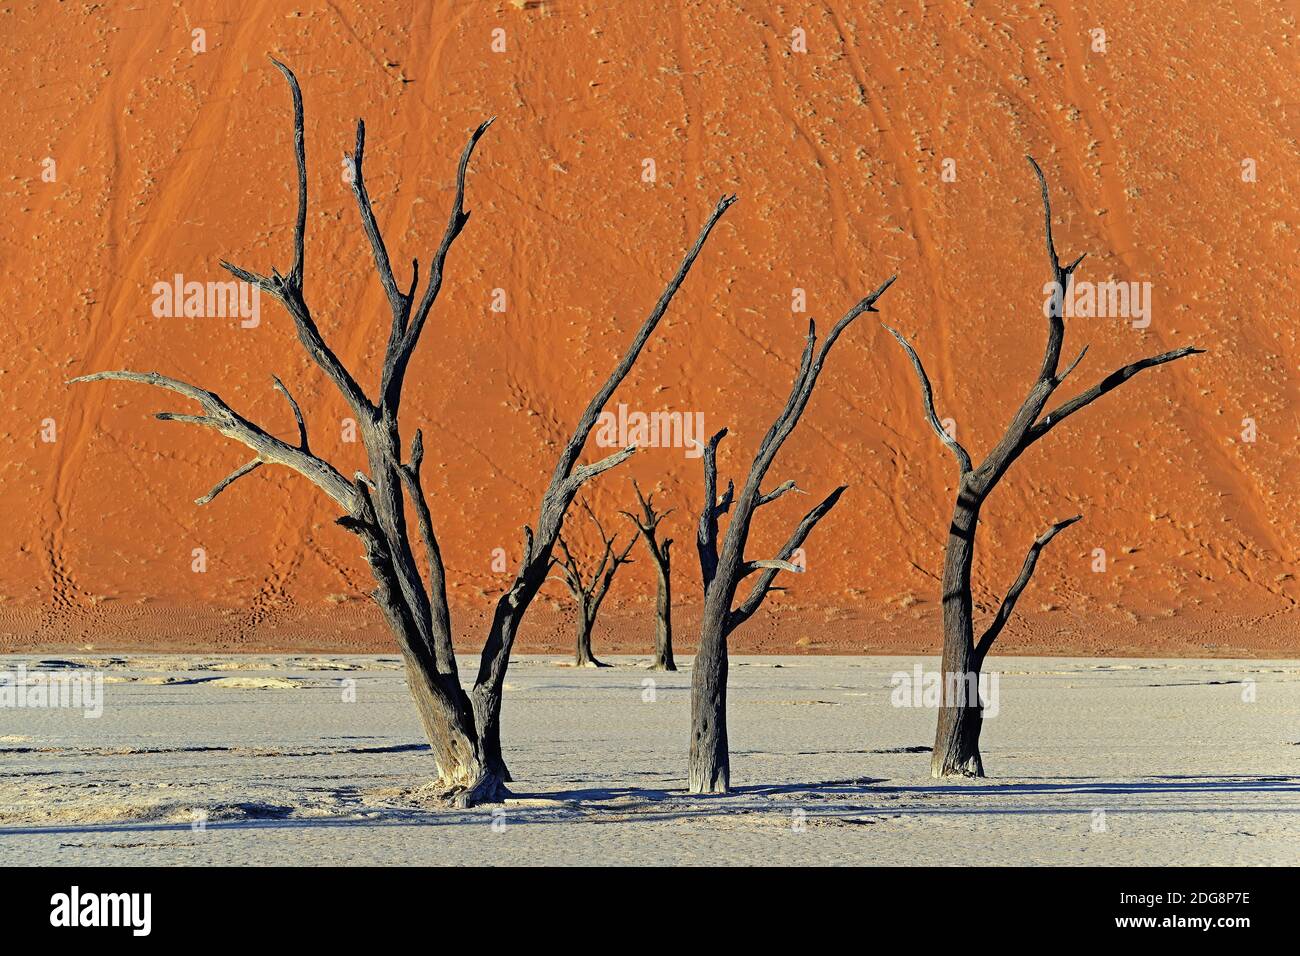 Kameldornbaeume (Acacia erioloba), auch Kameldorn oder Kameldornakazie im letzten Abendlicht,  Namib Naukluft Nationalpark, Deadvlei, Dead Vlei, Sossu Stock Photo